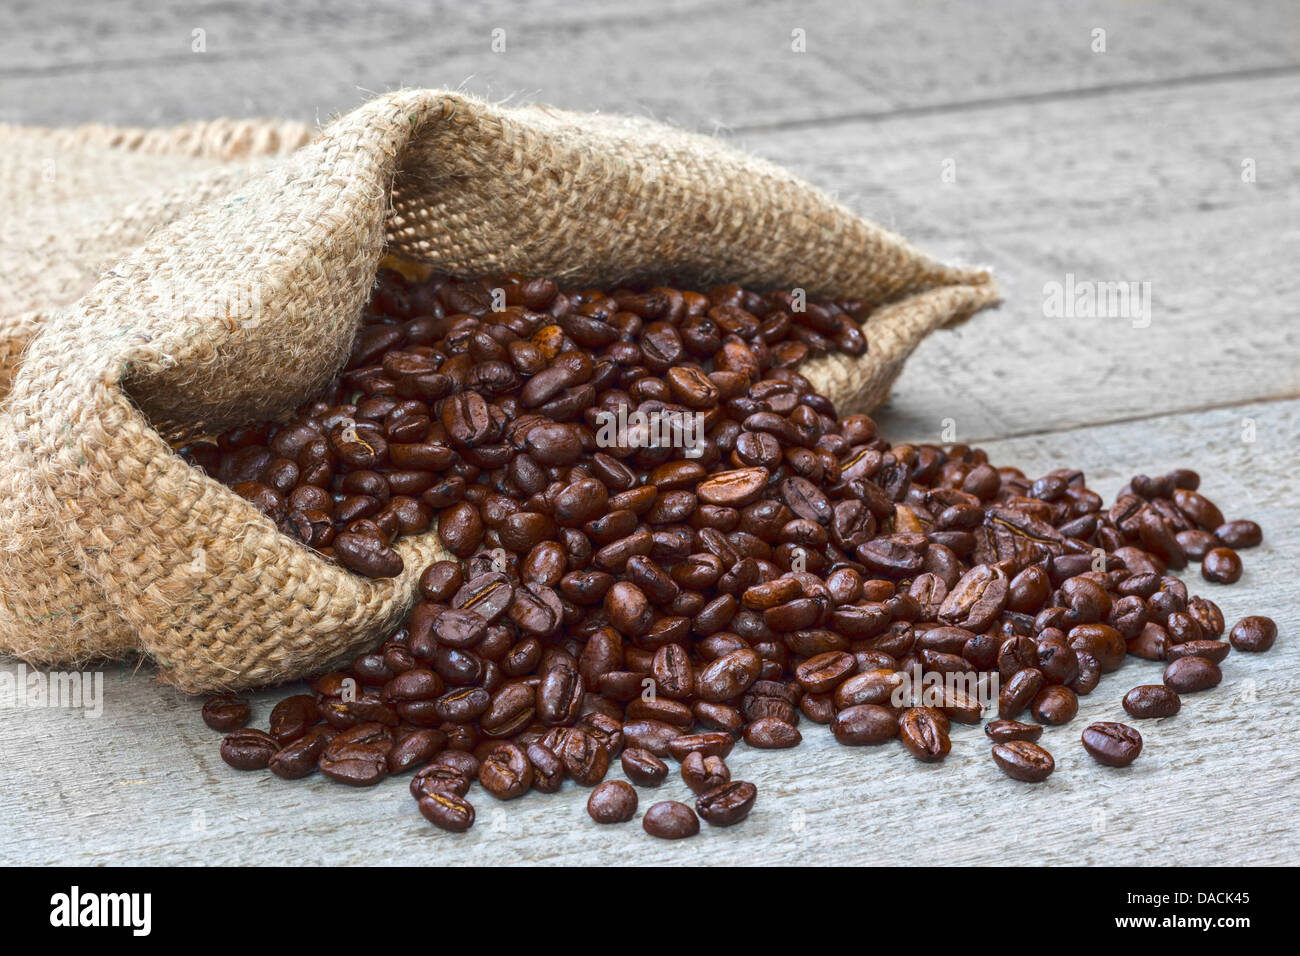 Kaffeebohnen Verschütten von Sack - frisch gebratenen Kaffeebohnen aus Sackleinen oder Jute meschotschek auf einem rustikalen Hintergrund verschütten. Stockfoto